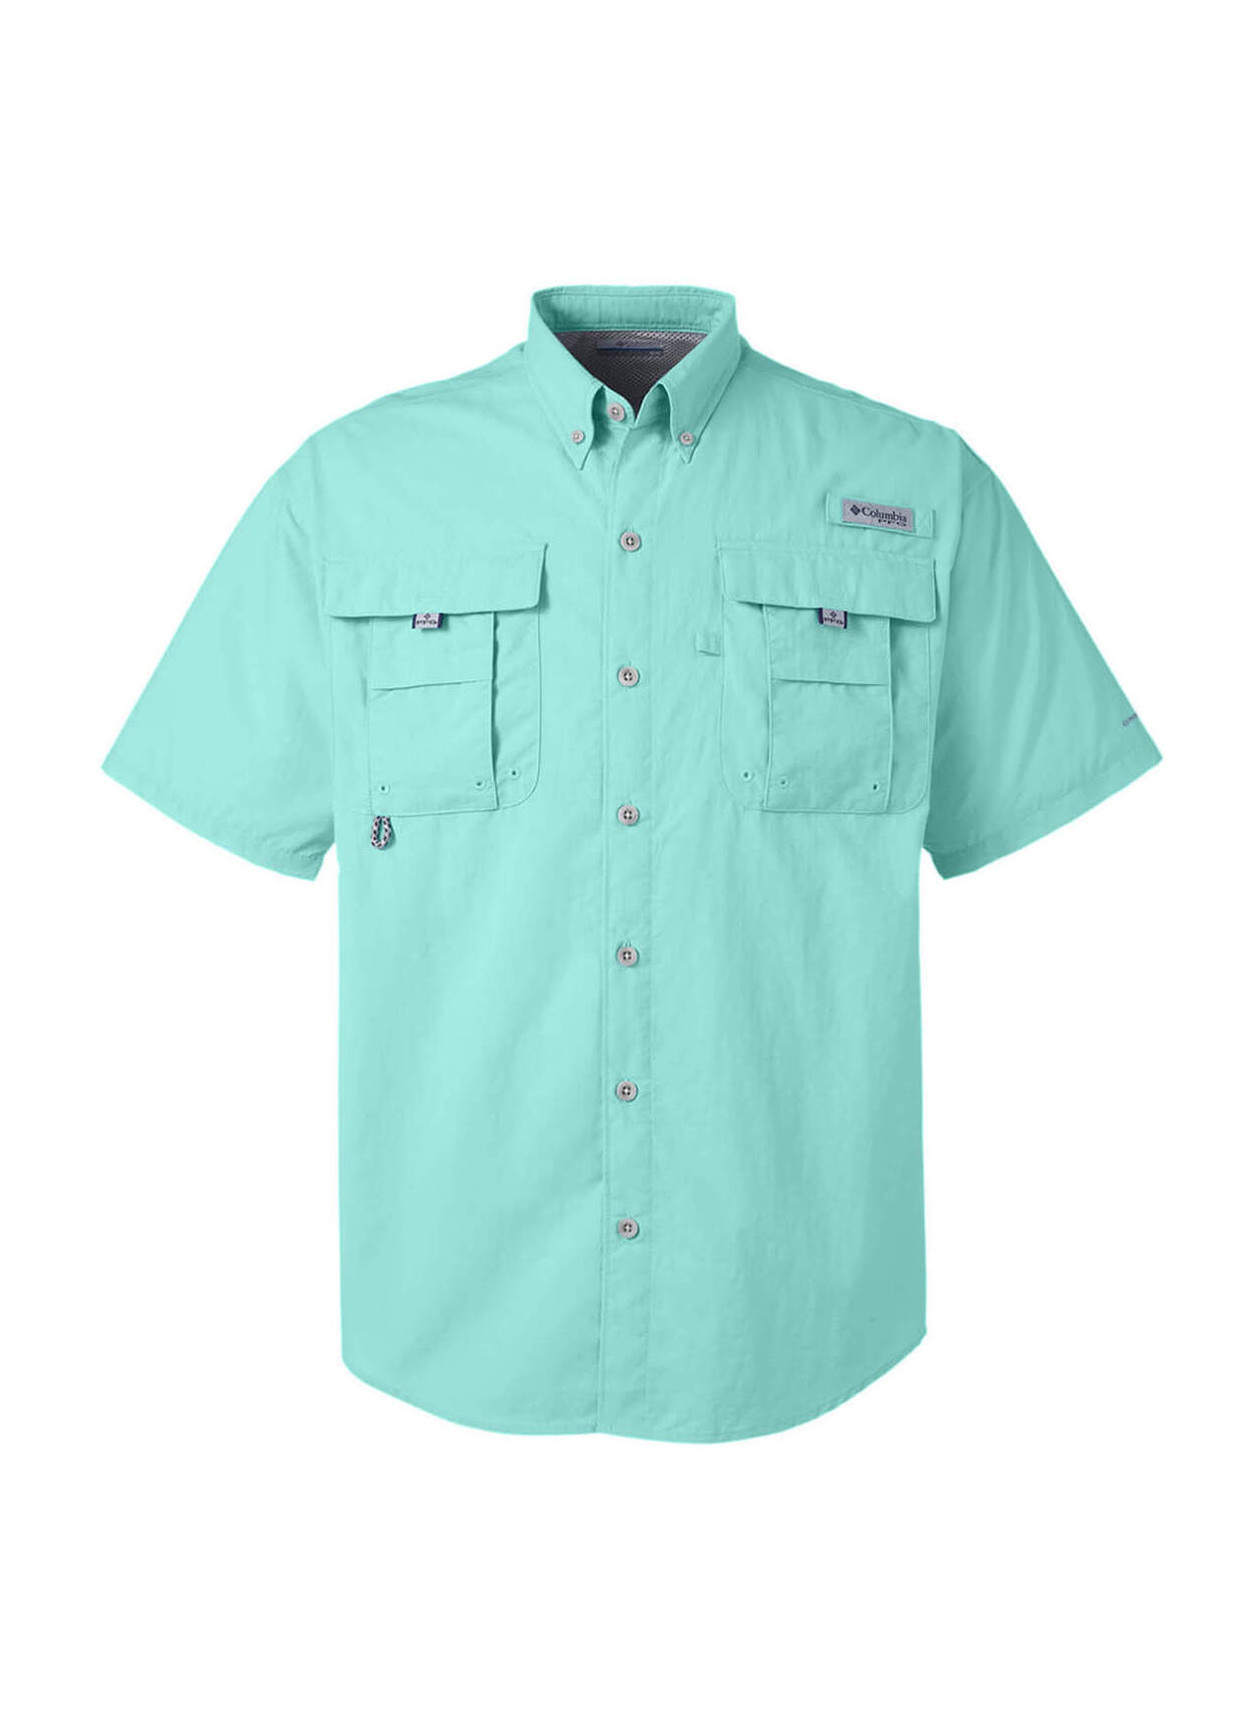 Printed Columbia Men's Gulf Stream Bahama Short-Sleeve Shirt